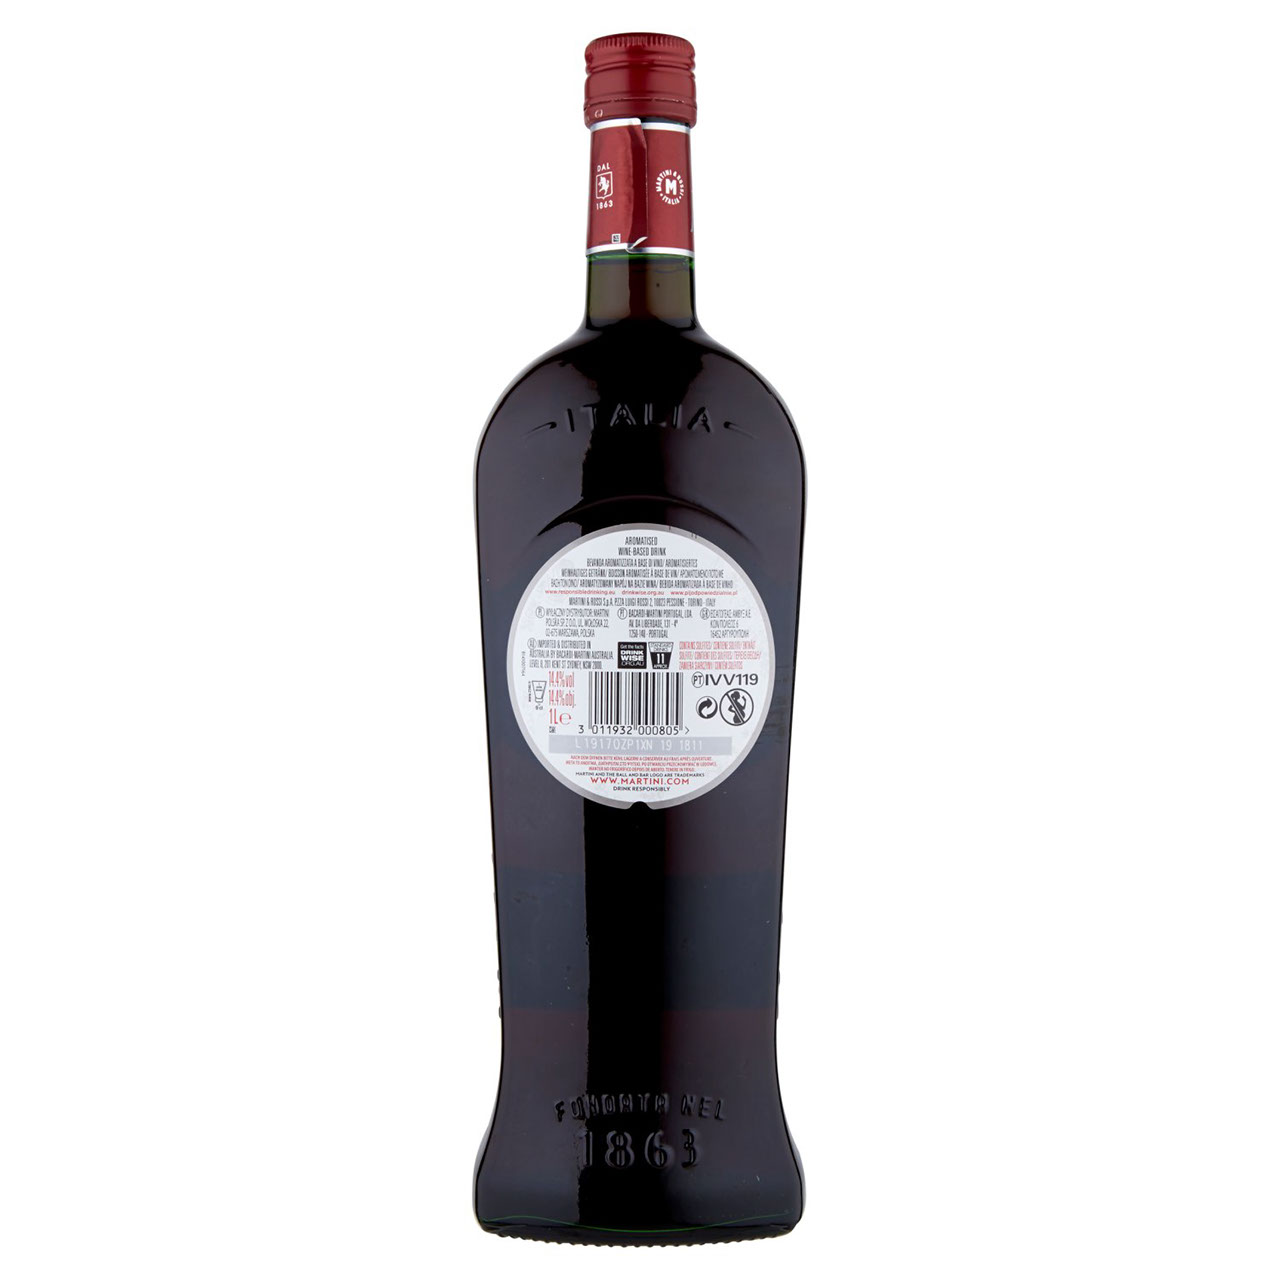 Martini l'Aperitivo Rosso 1 L in vendita online